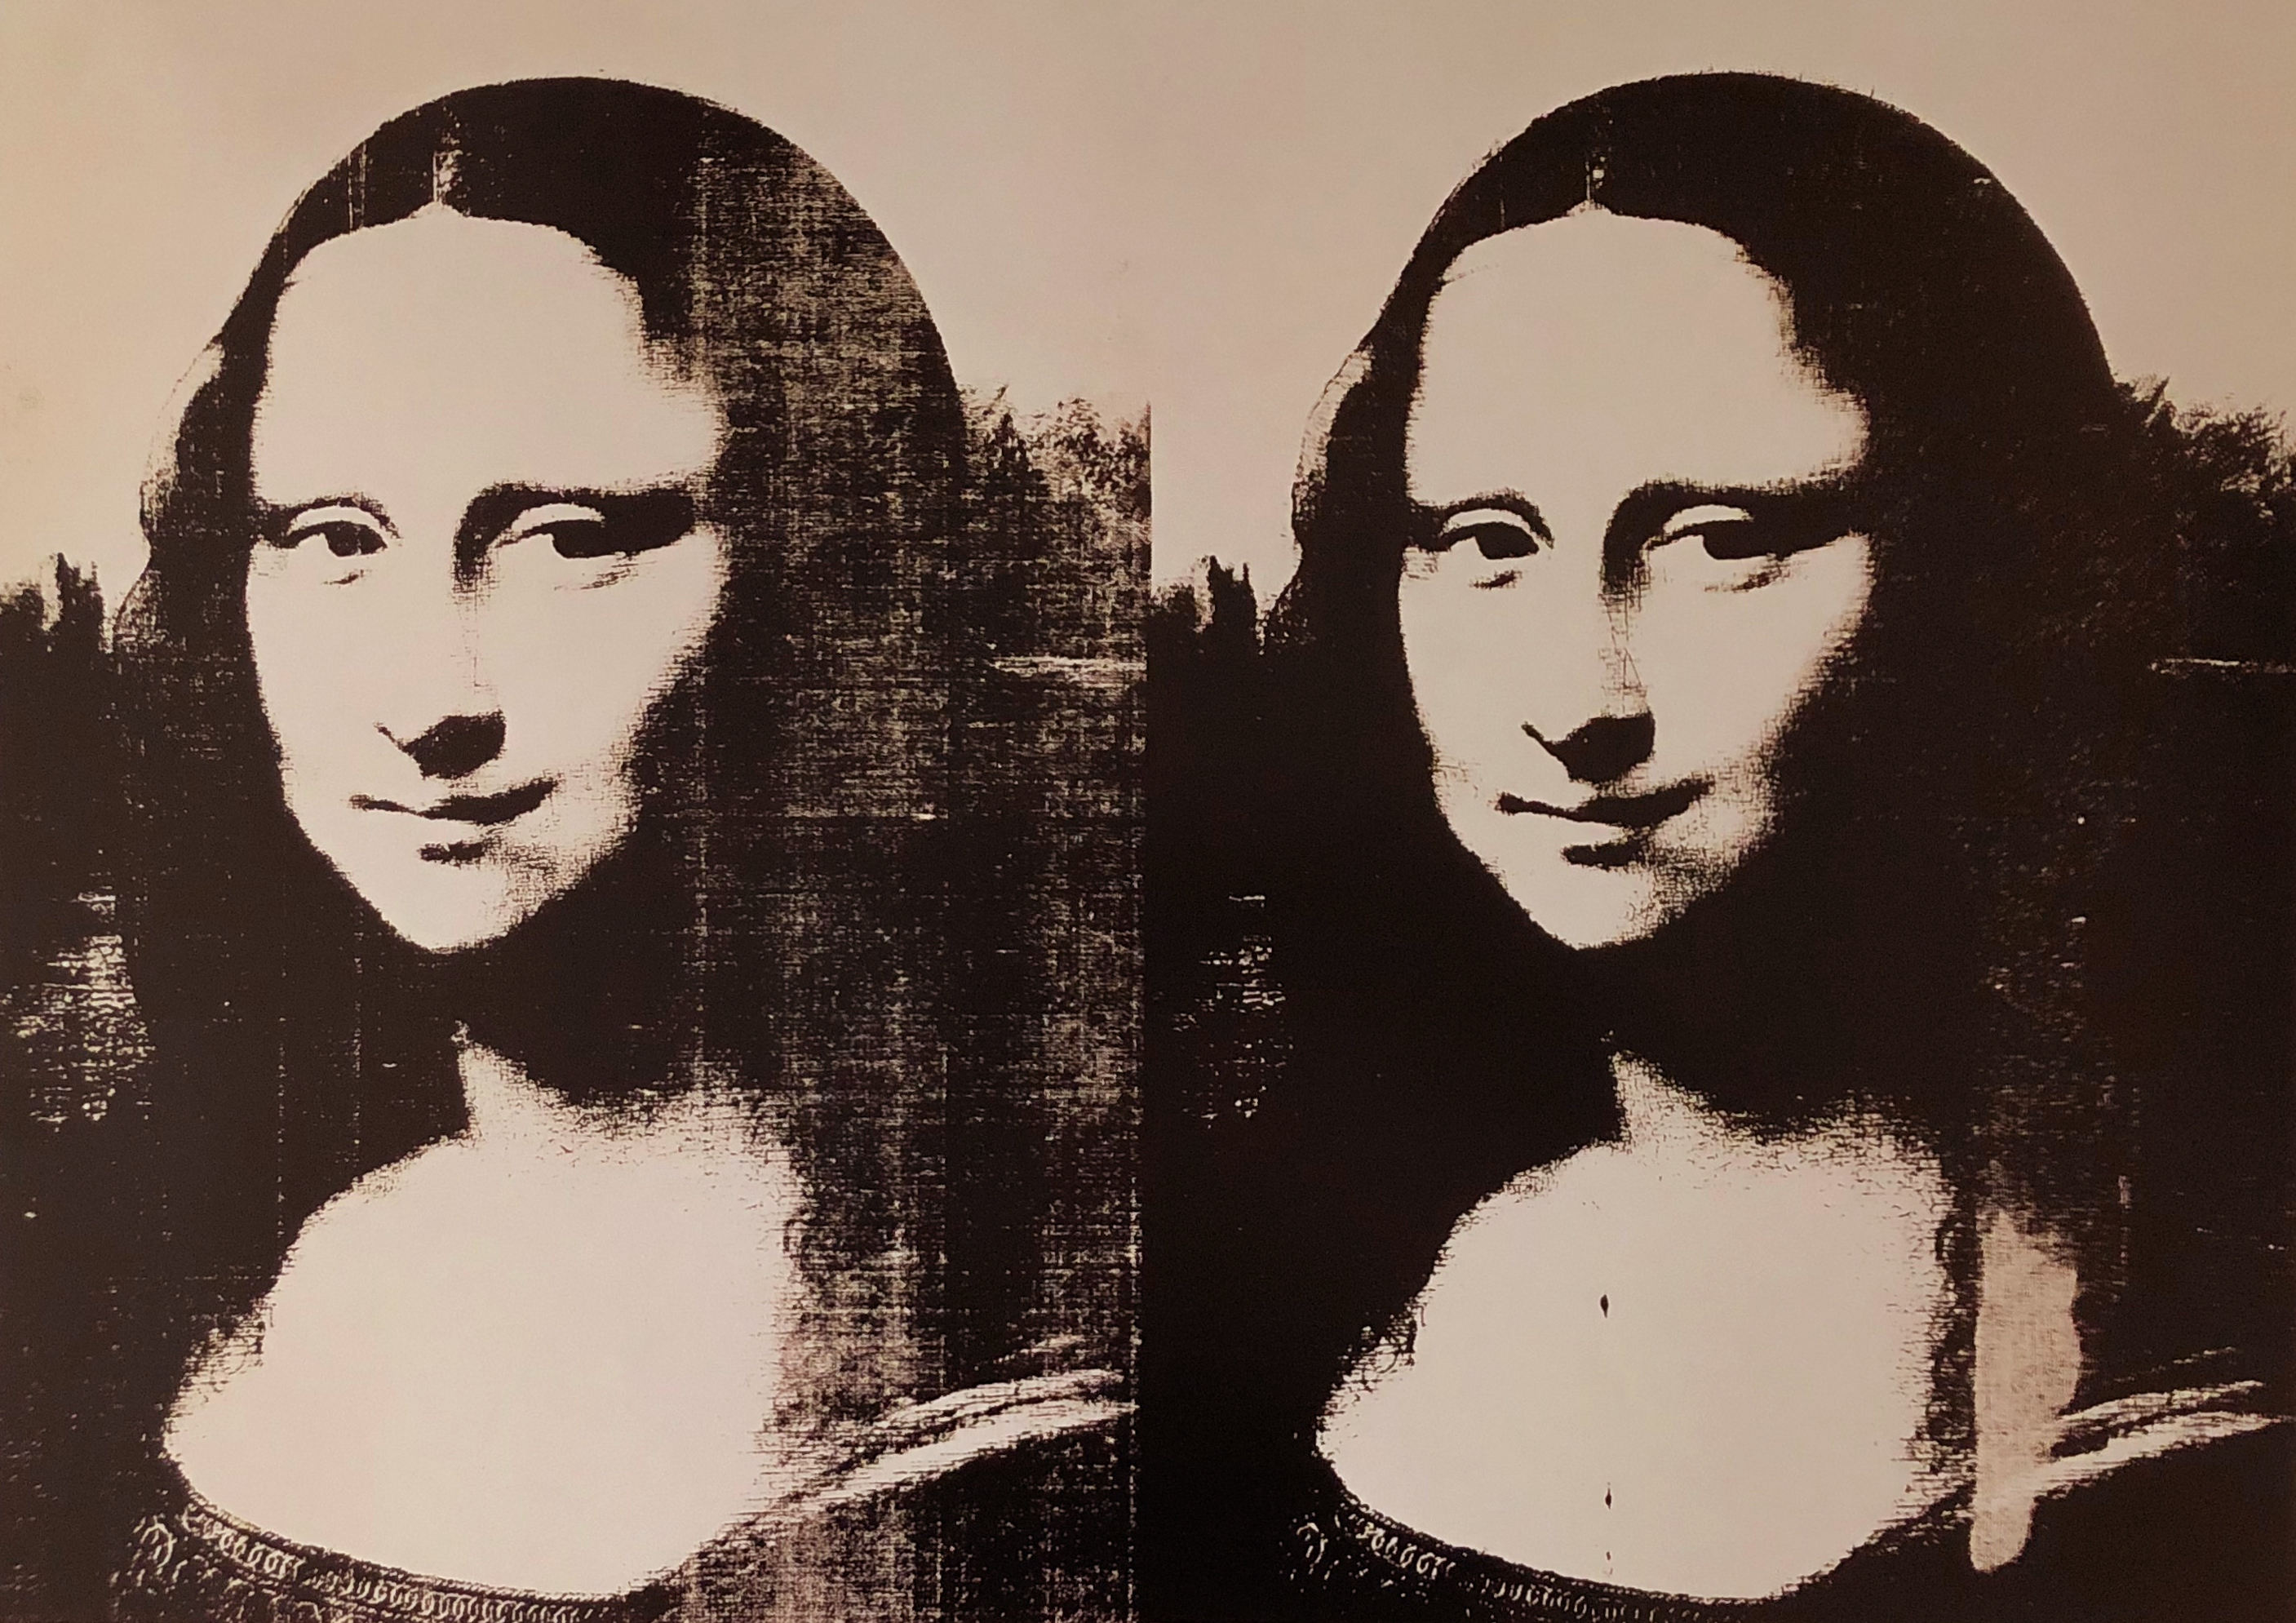 Double Mona Lisa, 1963